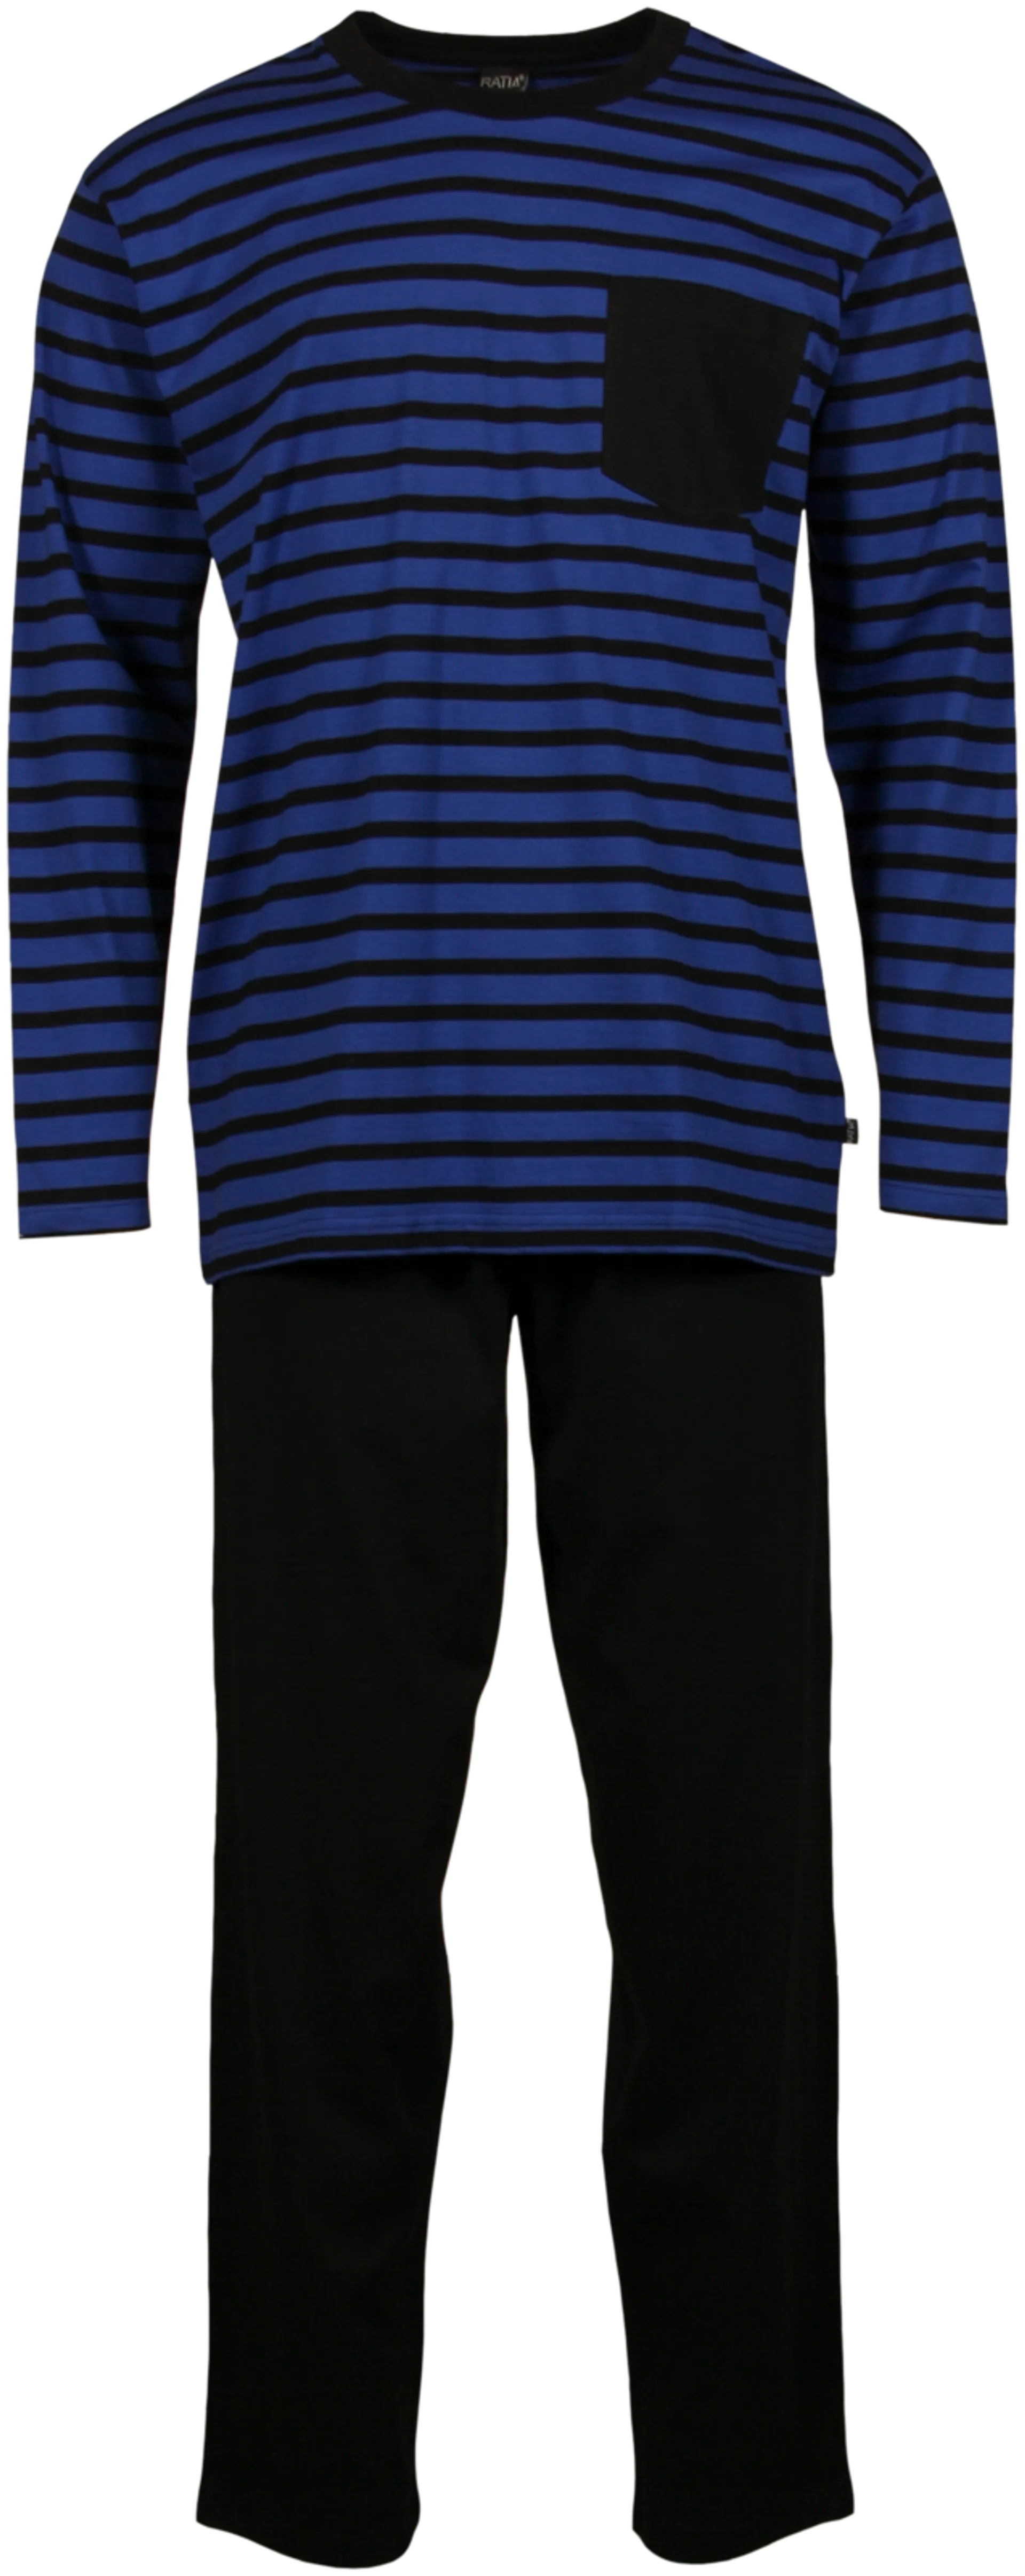 RATIA miesten pyjama - sininen-musta - 1